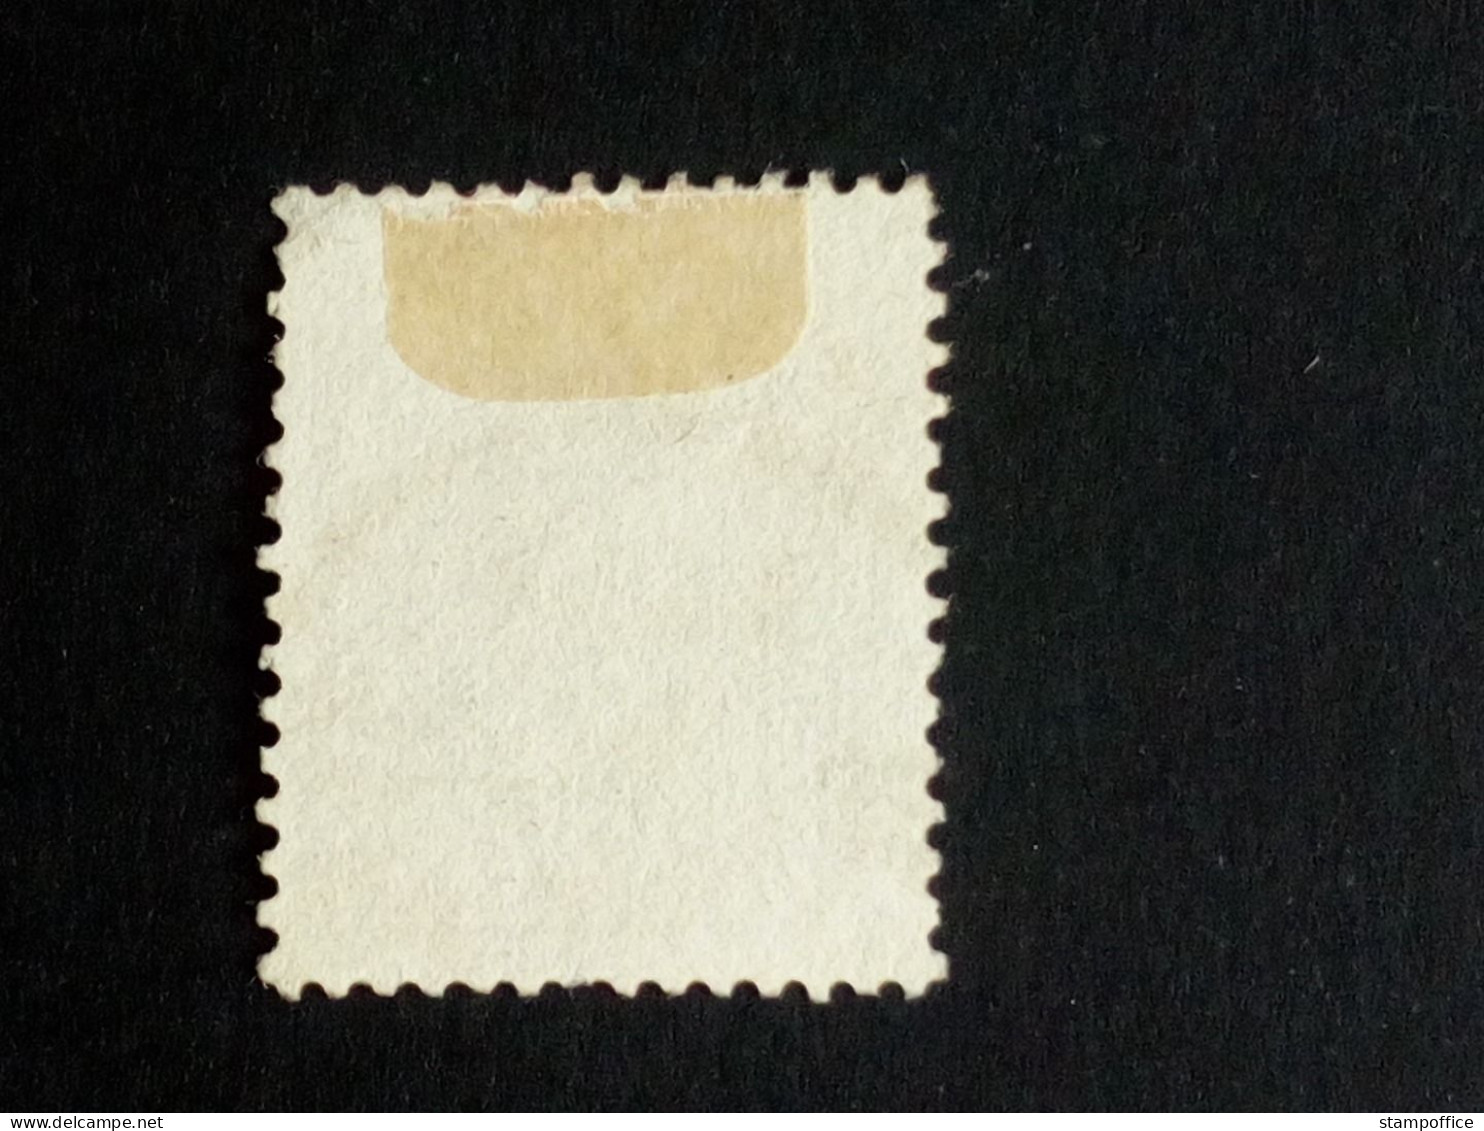 NORWEGEN MI-NR. 10 GESTEMPELT(USED) WAPPEN 1863 - Used Stamps